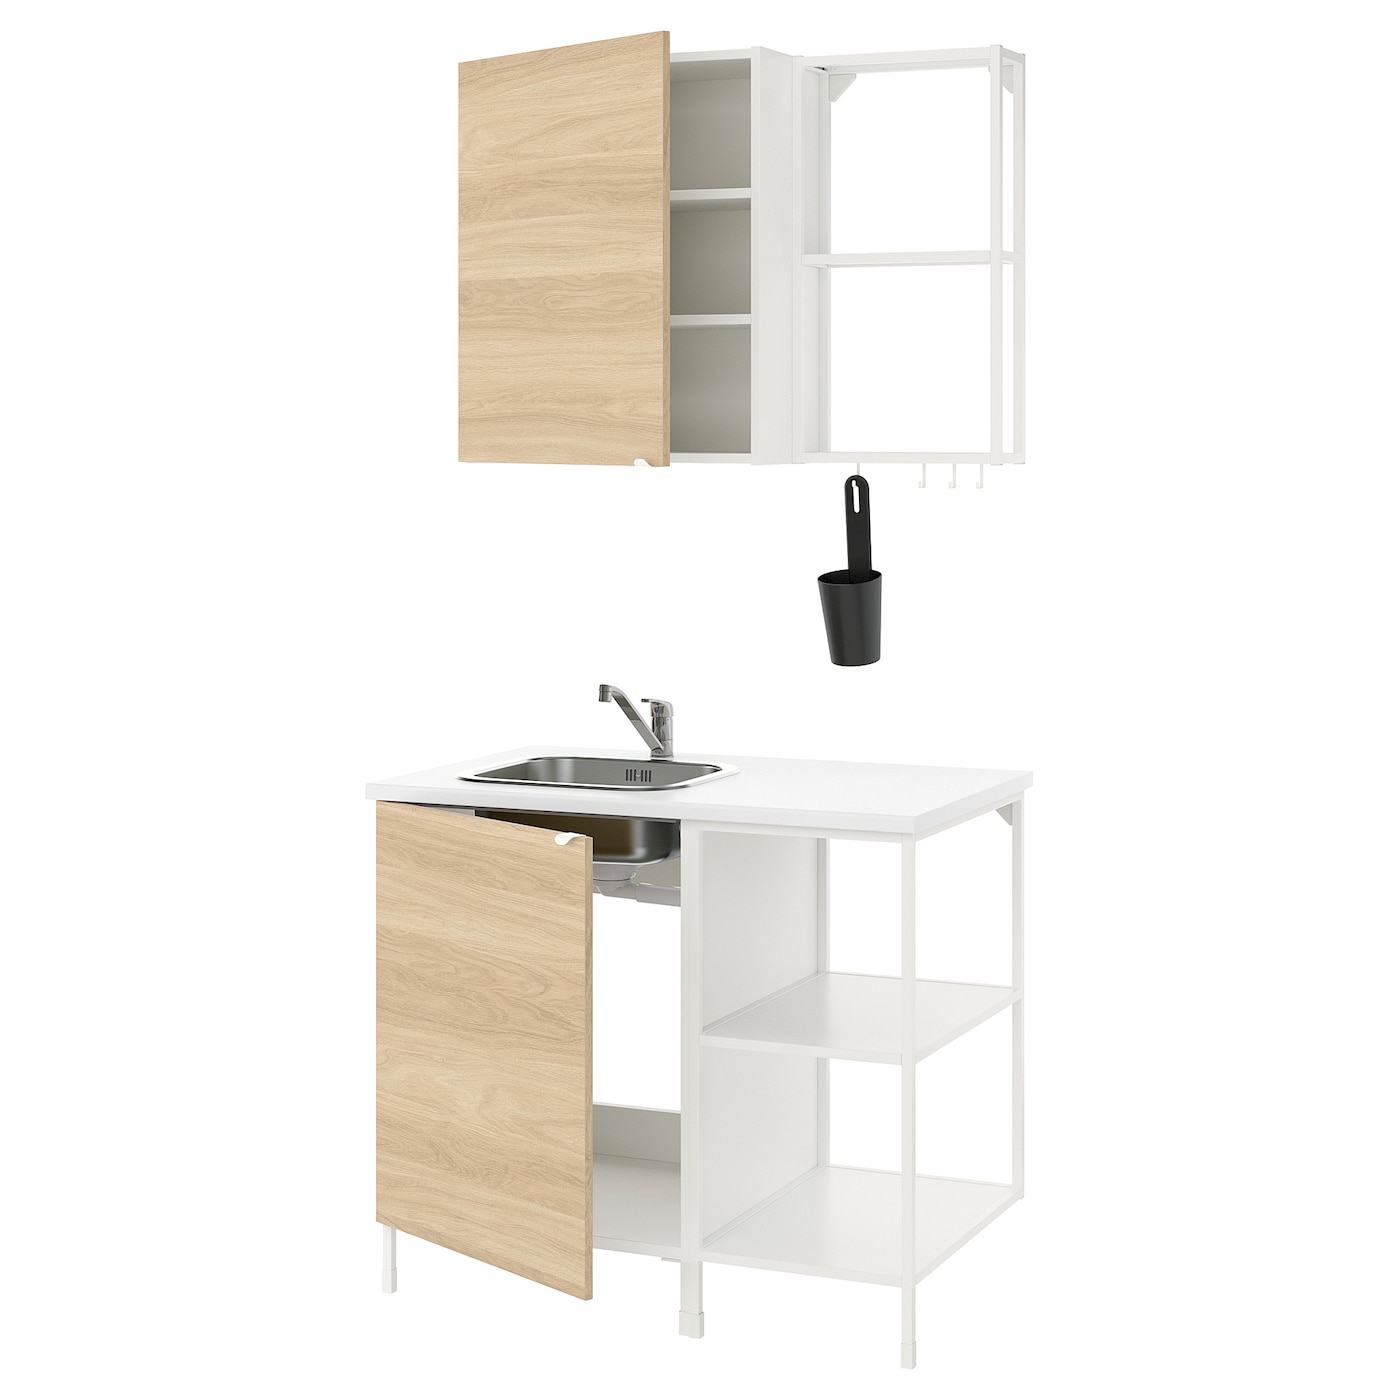 Кухонная комбинация для хранения вещей - ENHET  IKEA/ ЭНХЕТ ИКЕА, 103x63,5x222 см, белый/бежевый